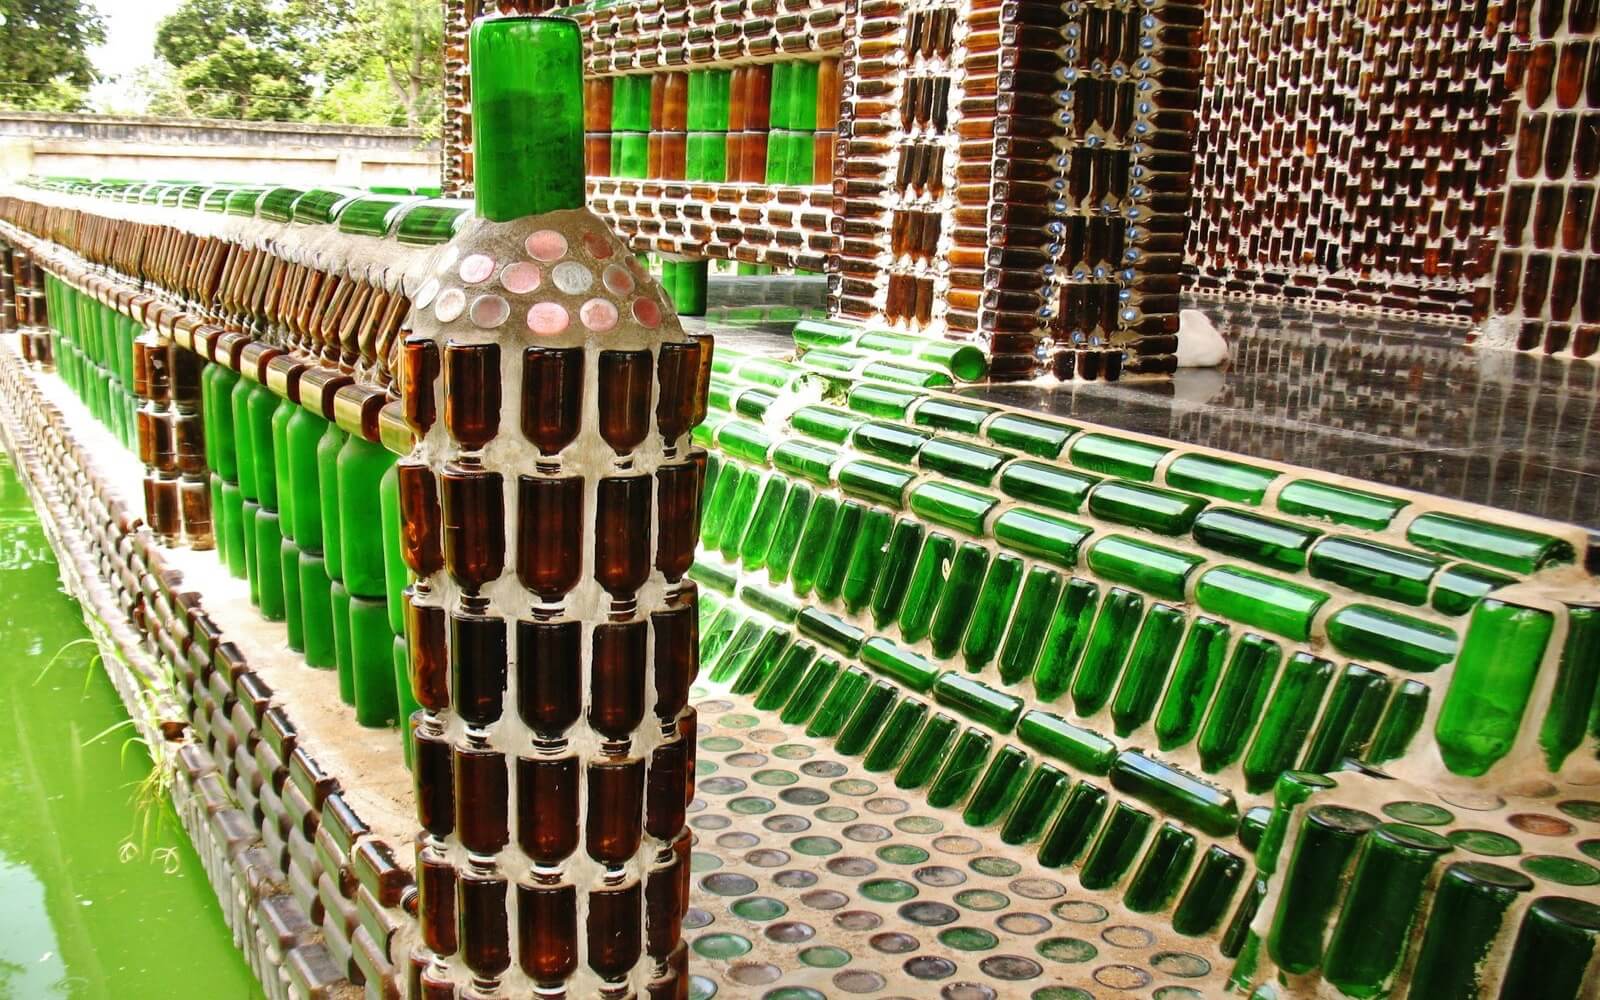 Бюджетный вариант забора для дачи из пластиковых бутылок